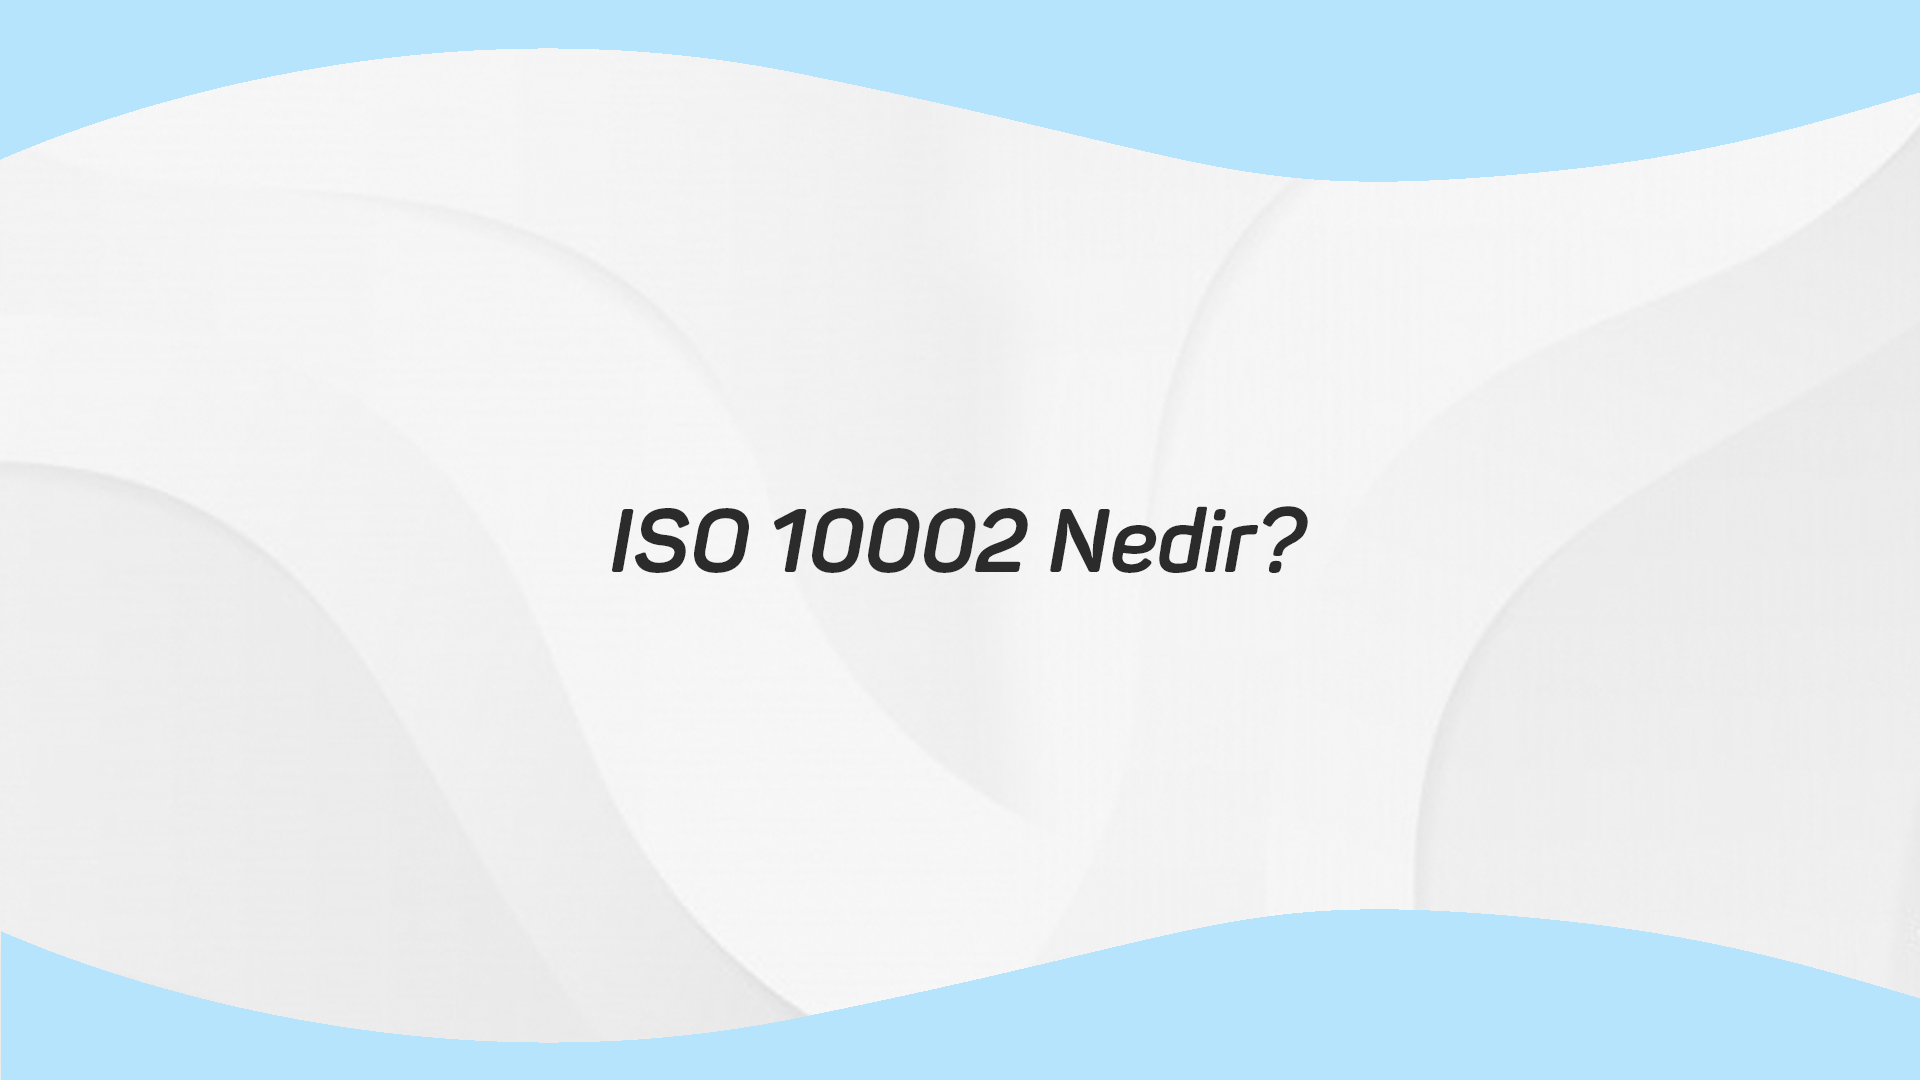 ISO 10002 Nedir?